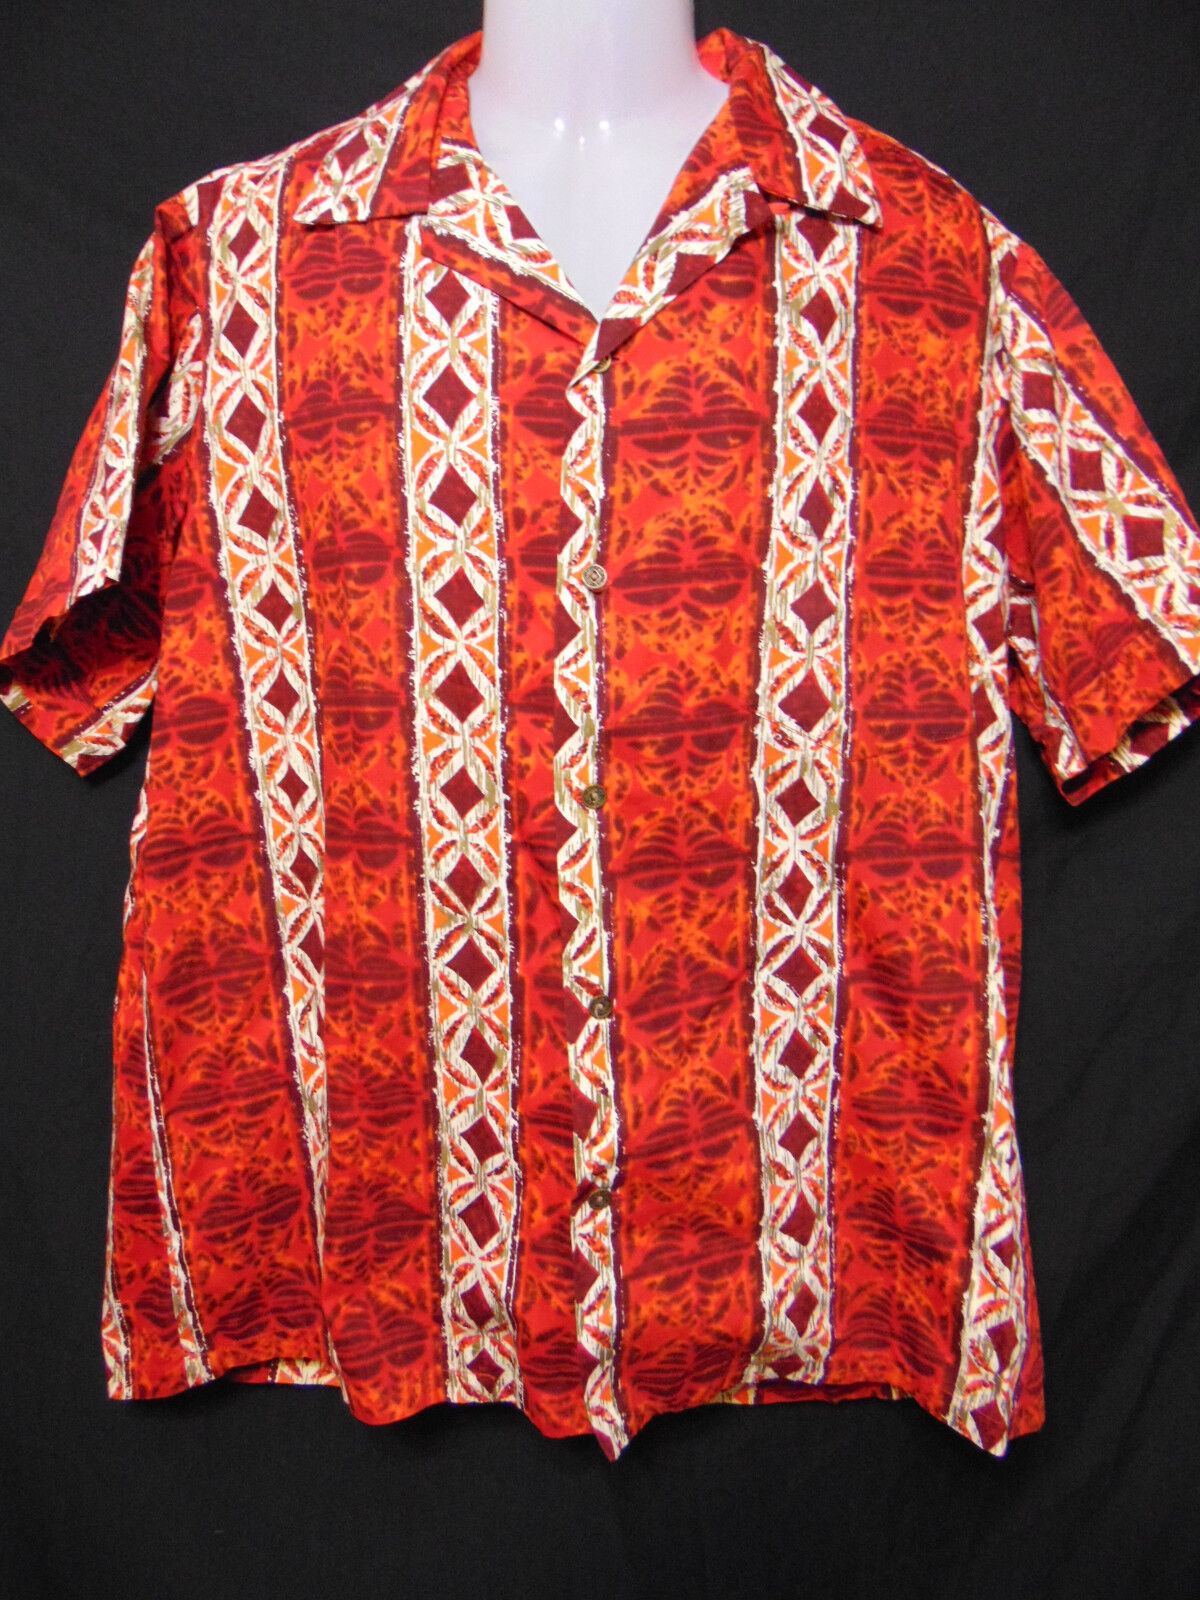 ALFRED SHAHEEN Honolulu Vintage 50s/60s Hawaiian Style Shirt L/Large NIIHAU TAPA